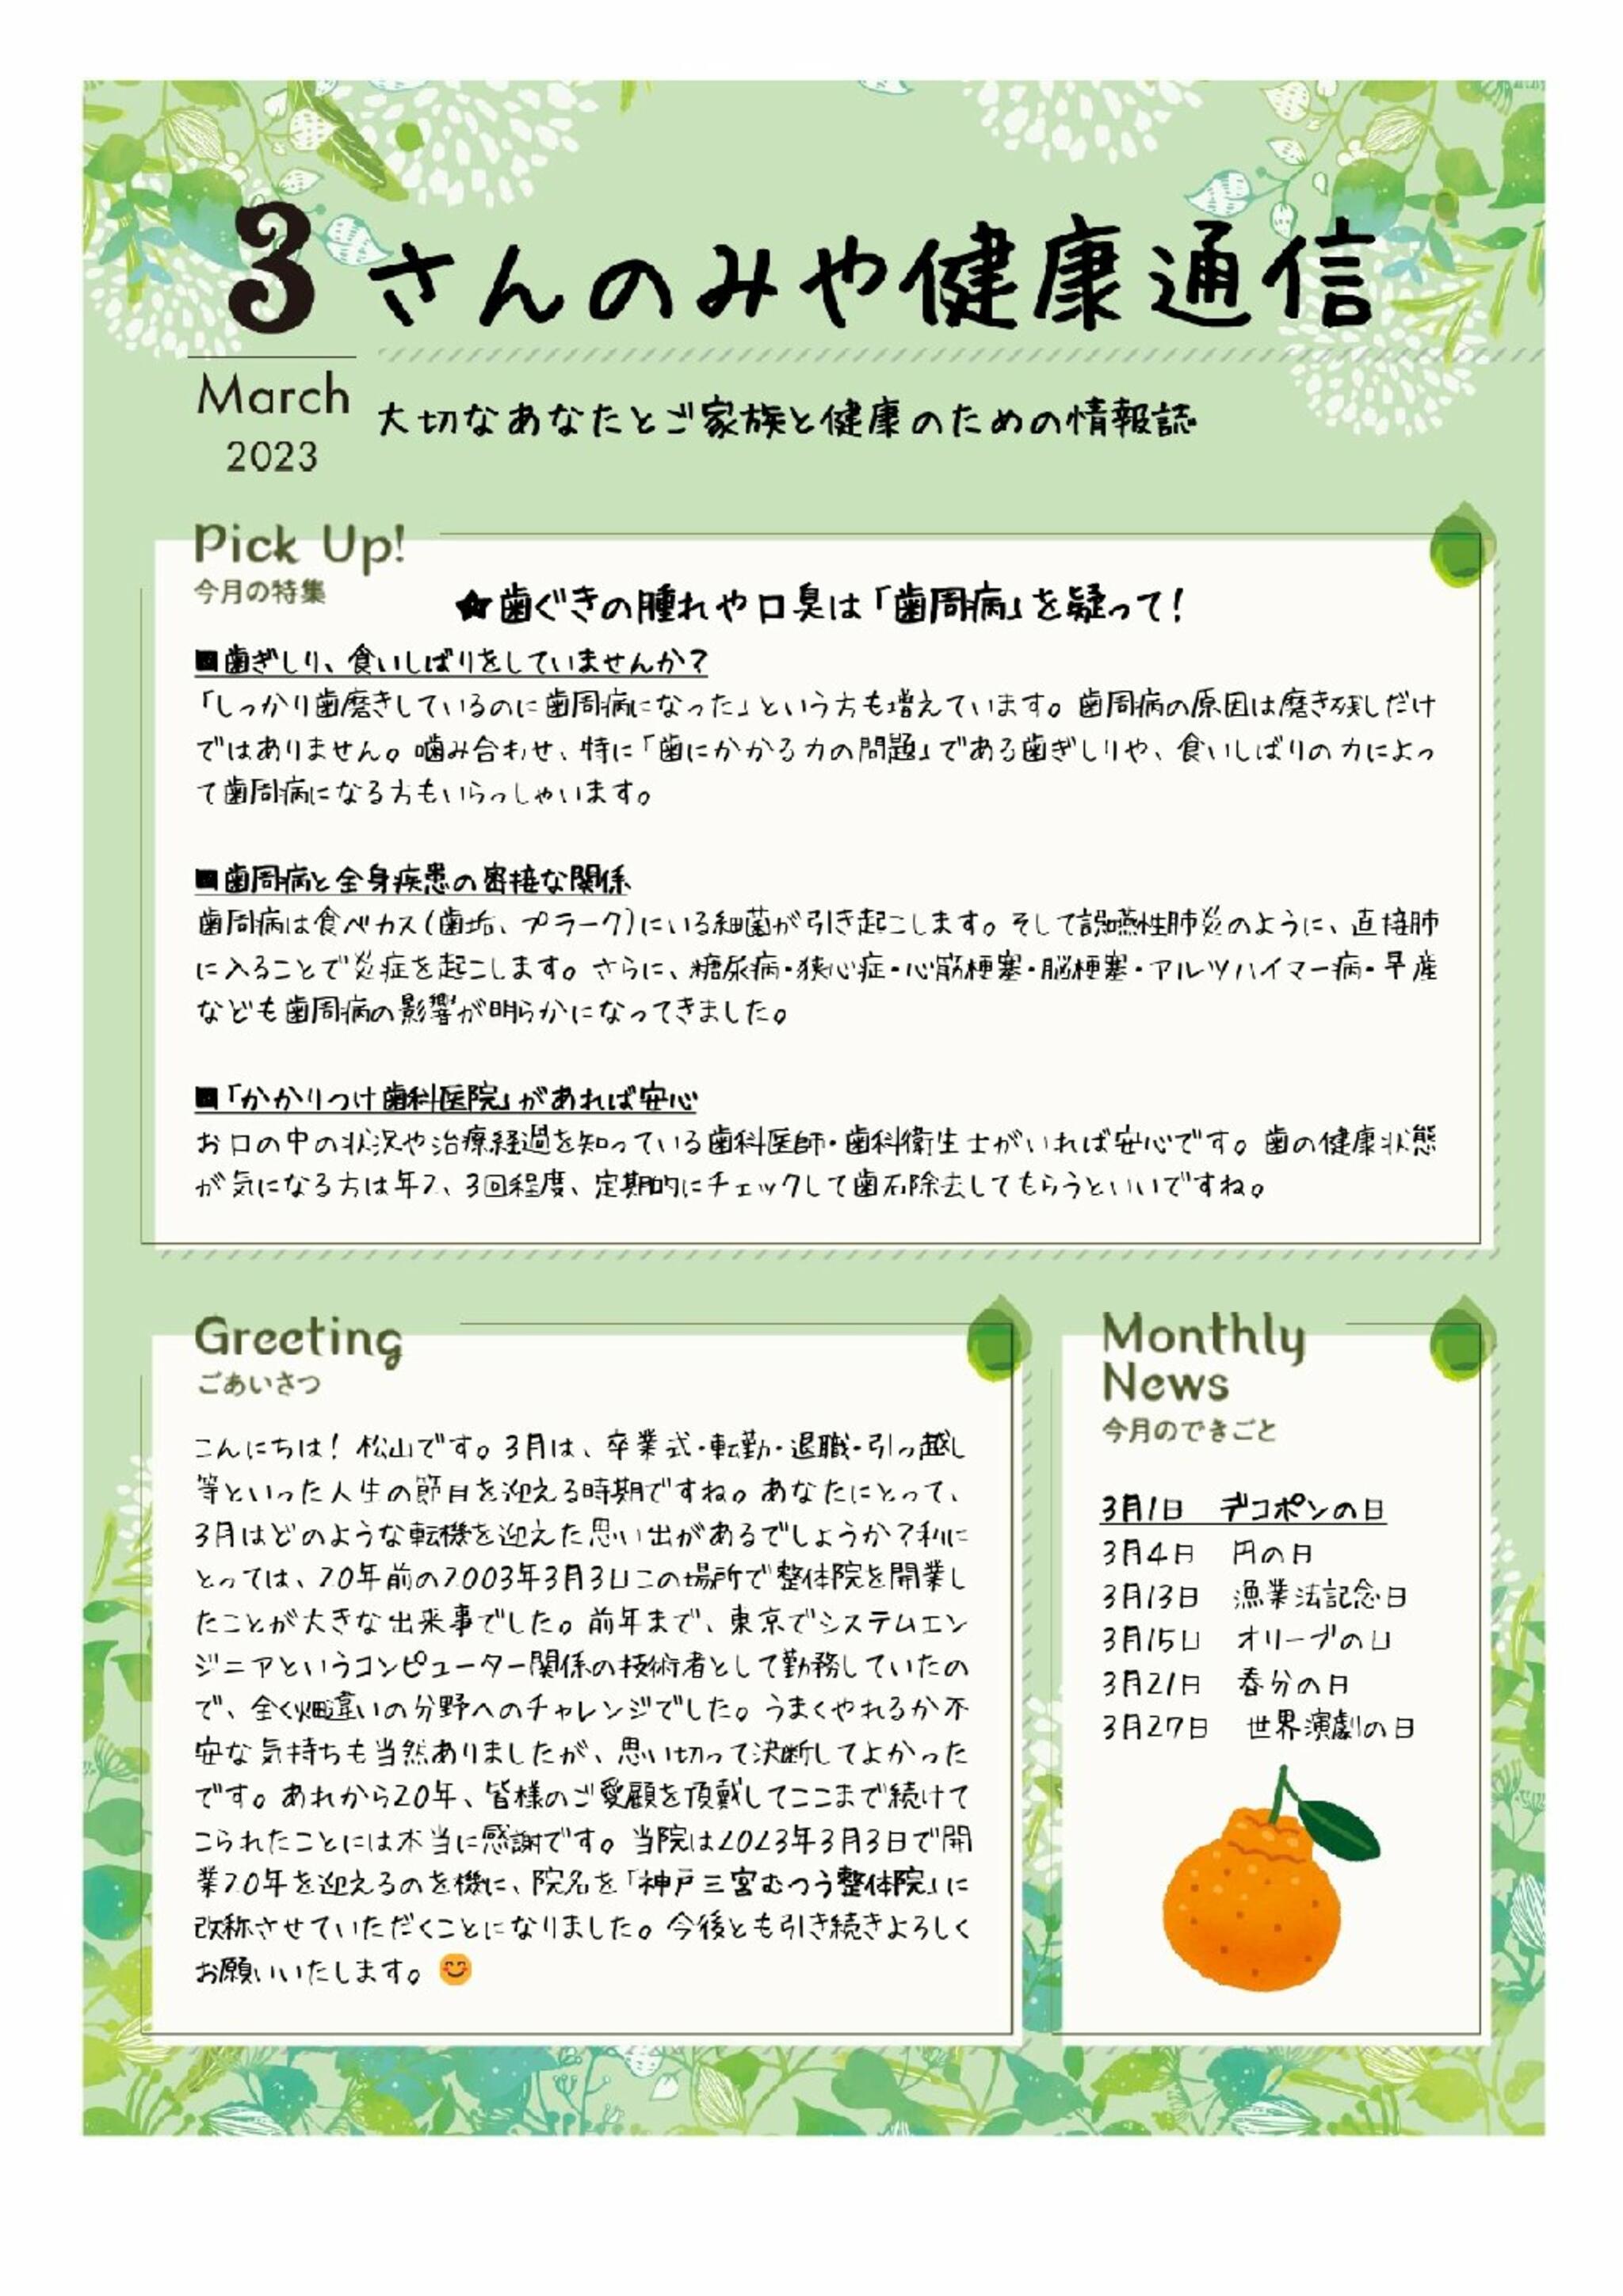 神戸三宮むつう整体院からのお知らせ(歯ぐきの腫れや口臭は「歯周病」を疑って！)に関する写真